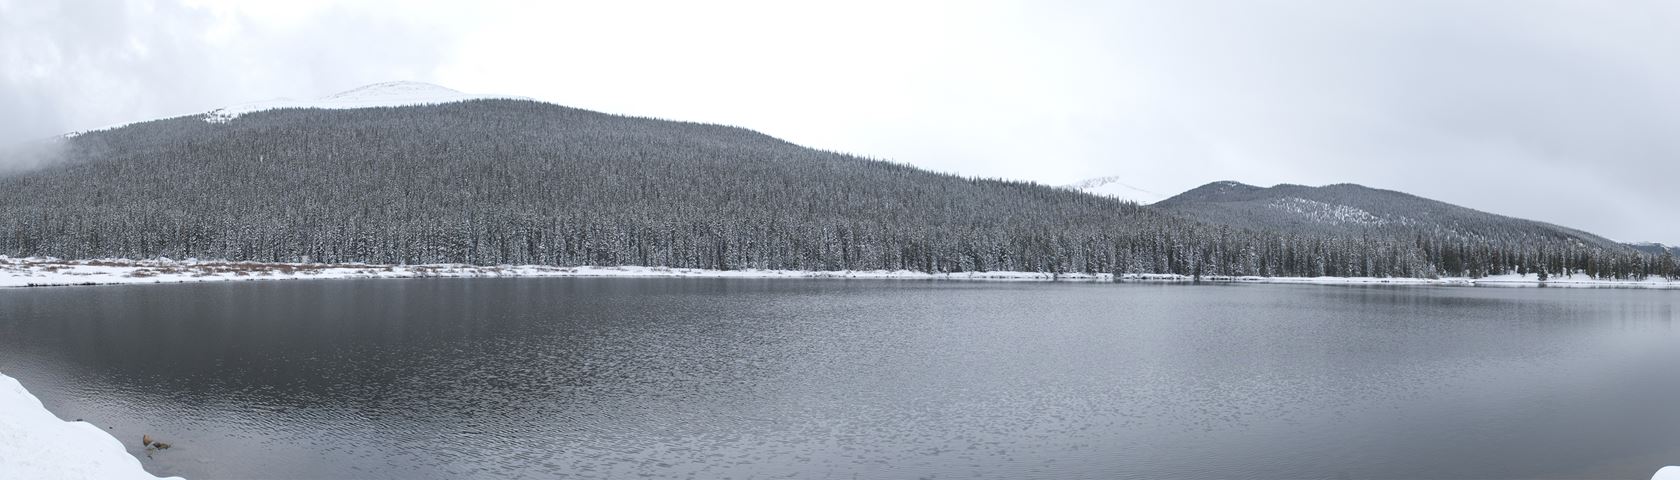 Echo Lake, Colorado